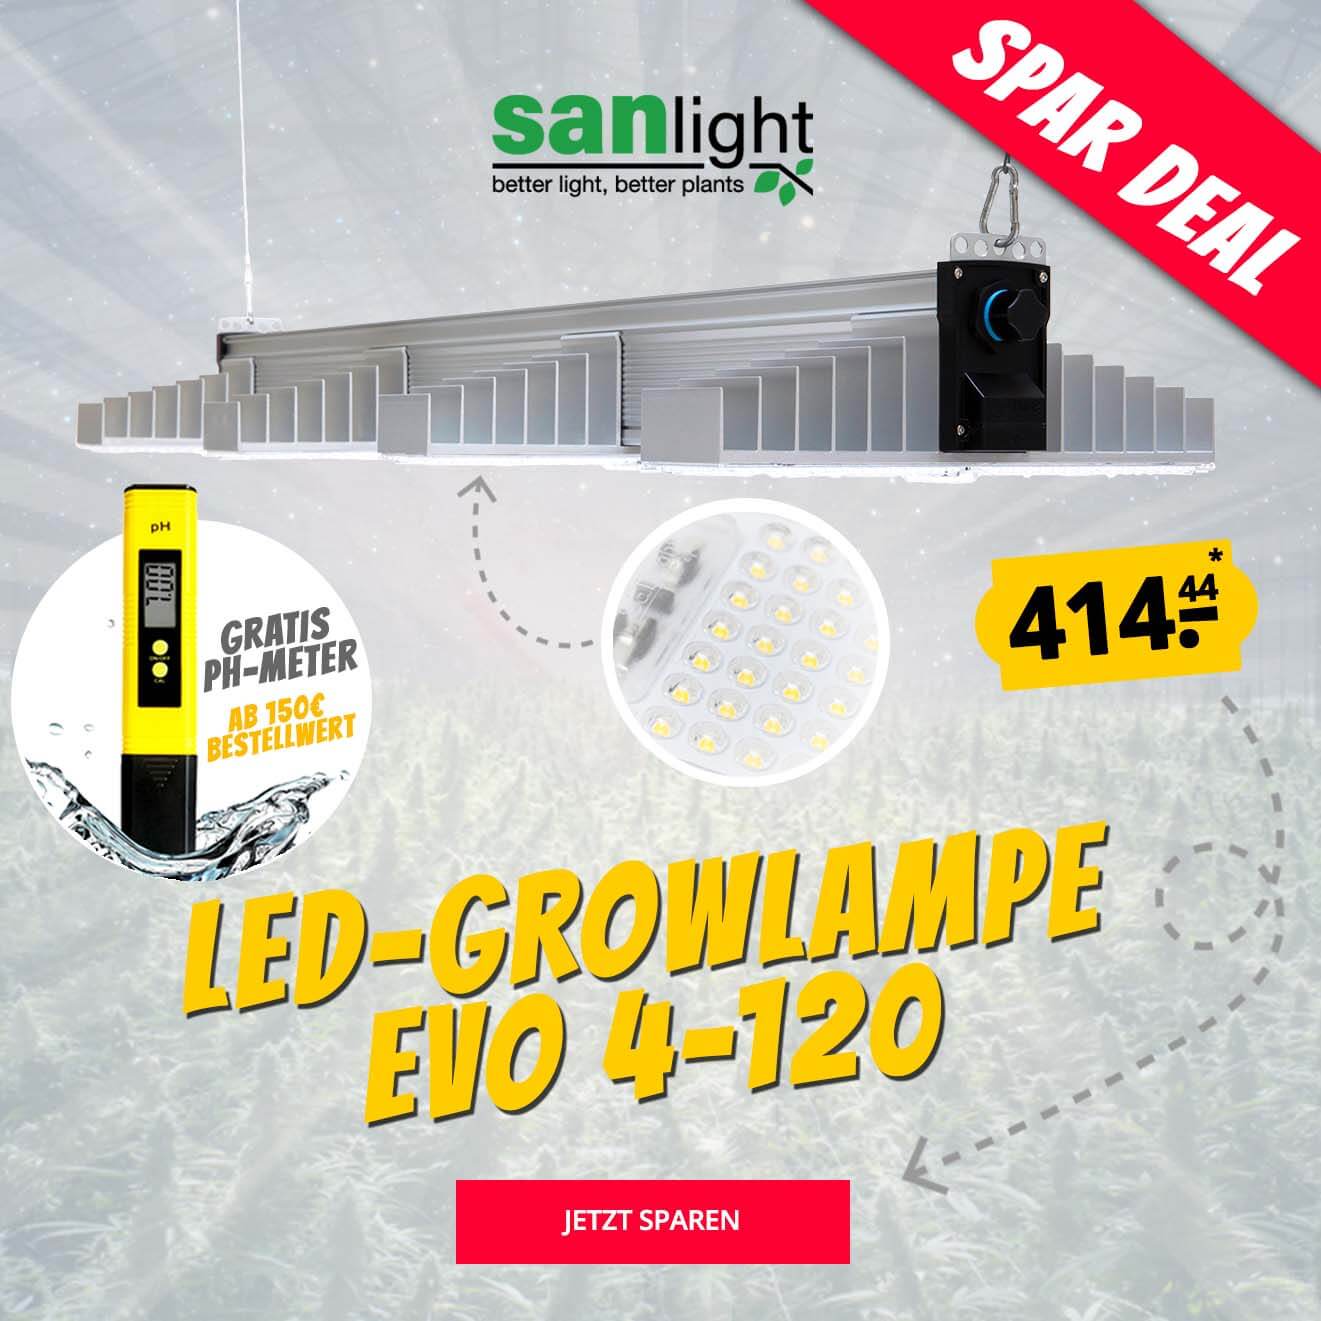 Growversand Slider Grow LED Lampe Sanlight Evo4-120 pH-Meter gratis Spardeal